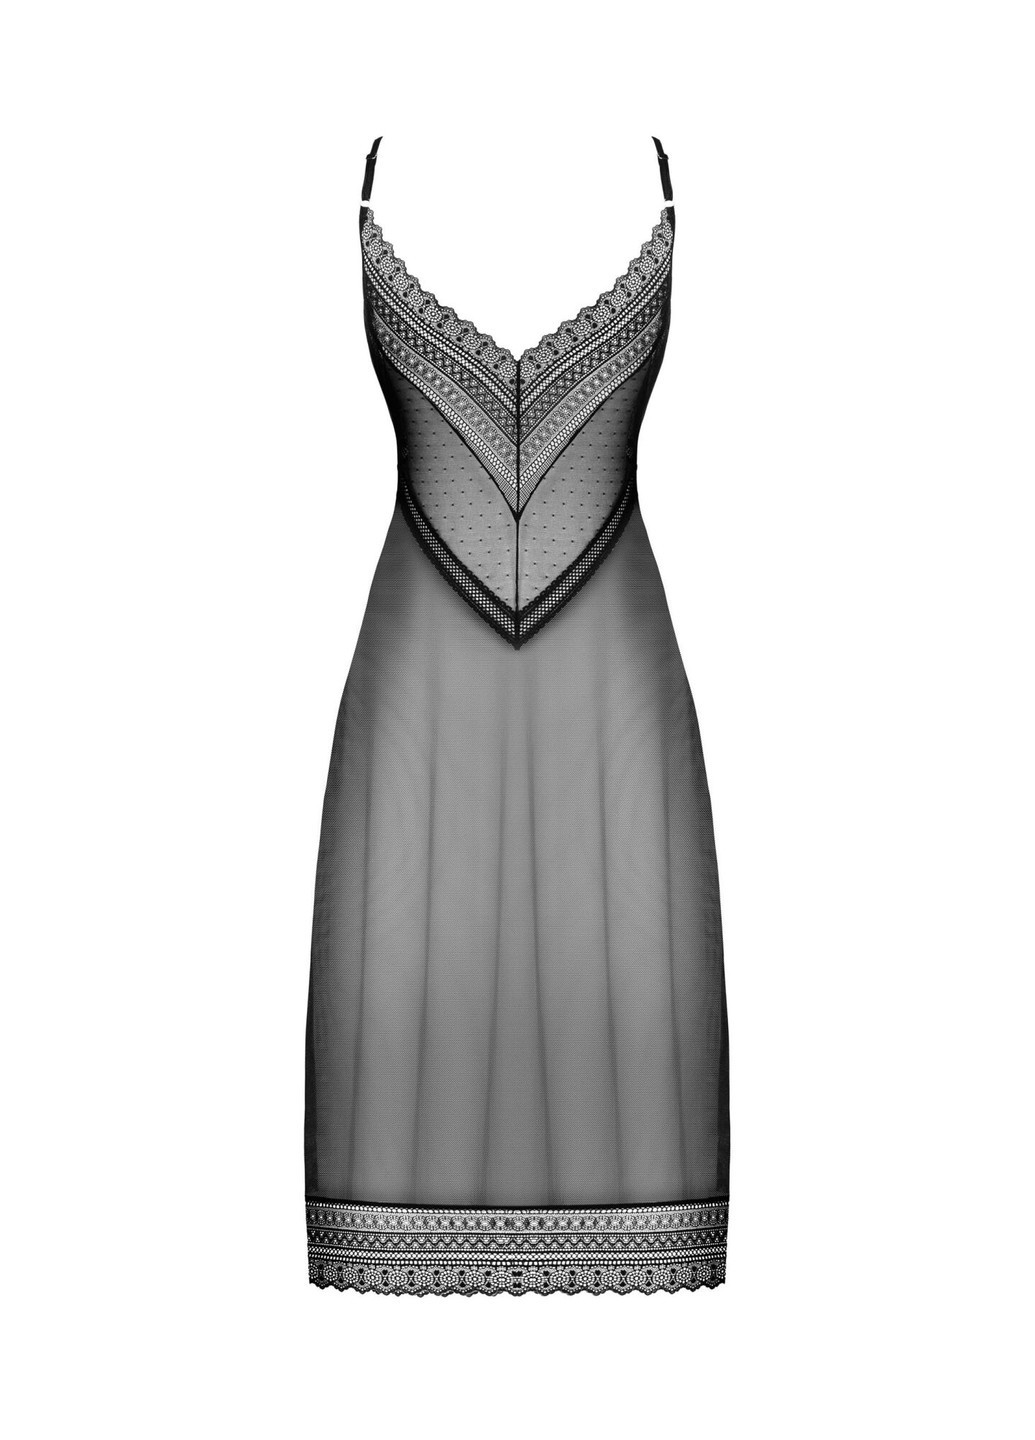 Полупрозрачная длинная сорочка Estiqua chemise XL/2XL, черный, ассиметричный крой Obsessive (271991863)